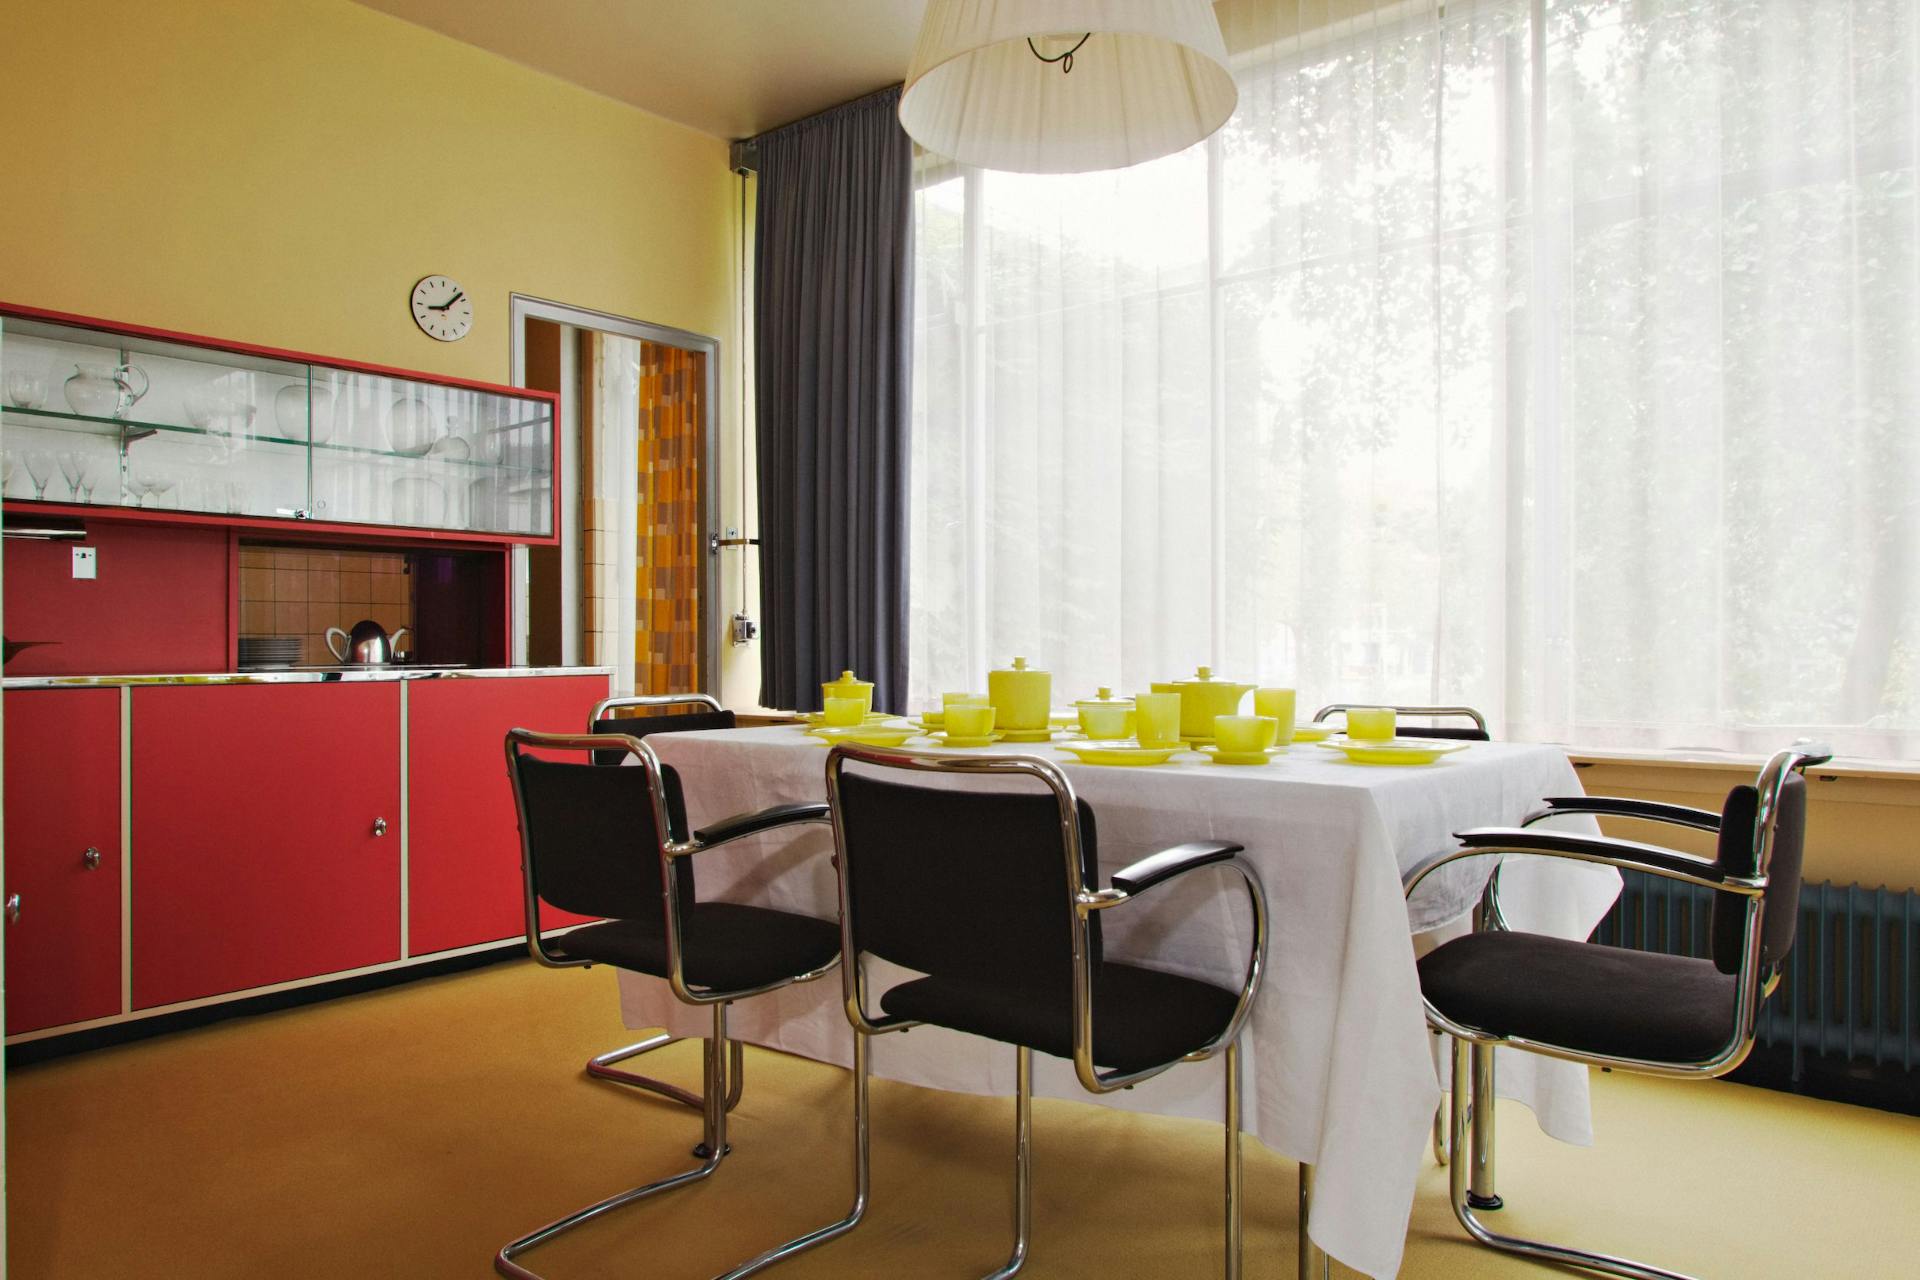 Sonneveld House. Dining room. Photo Johannes Schwartz 